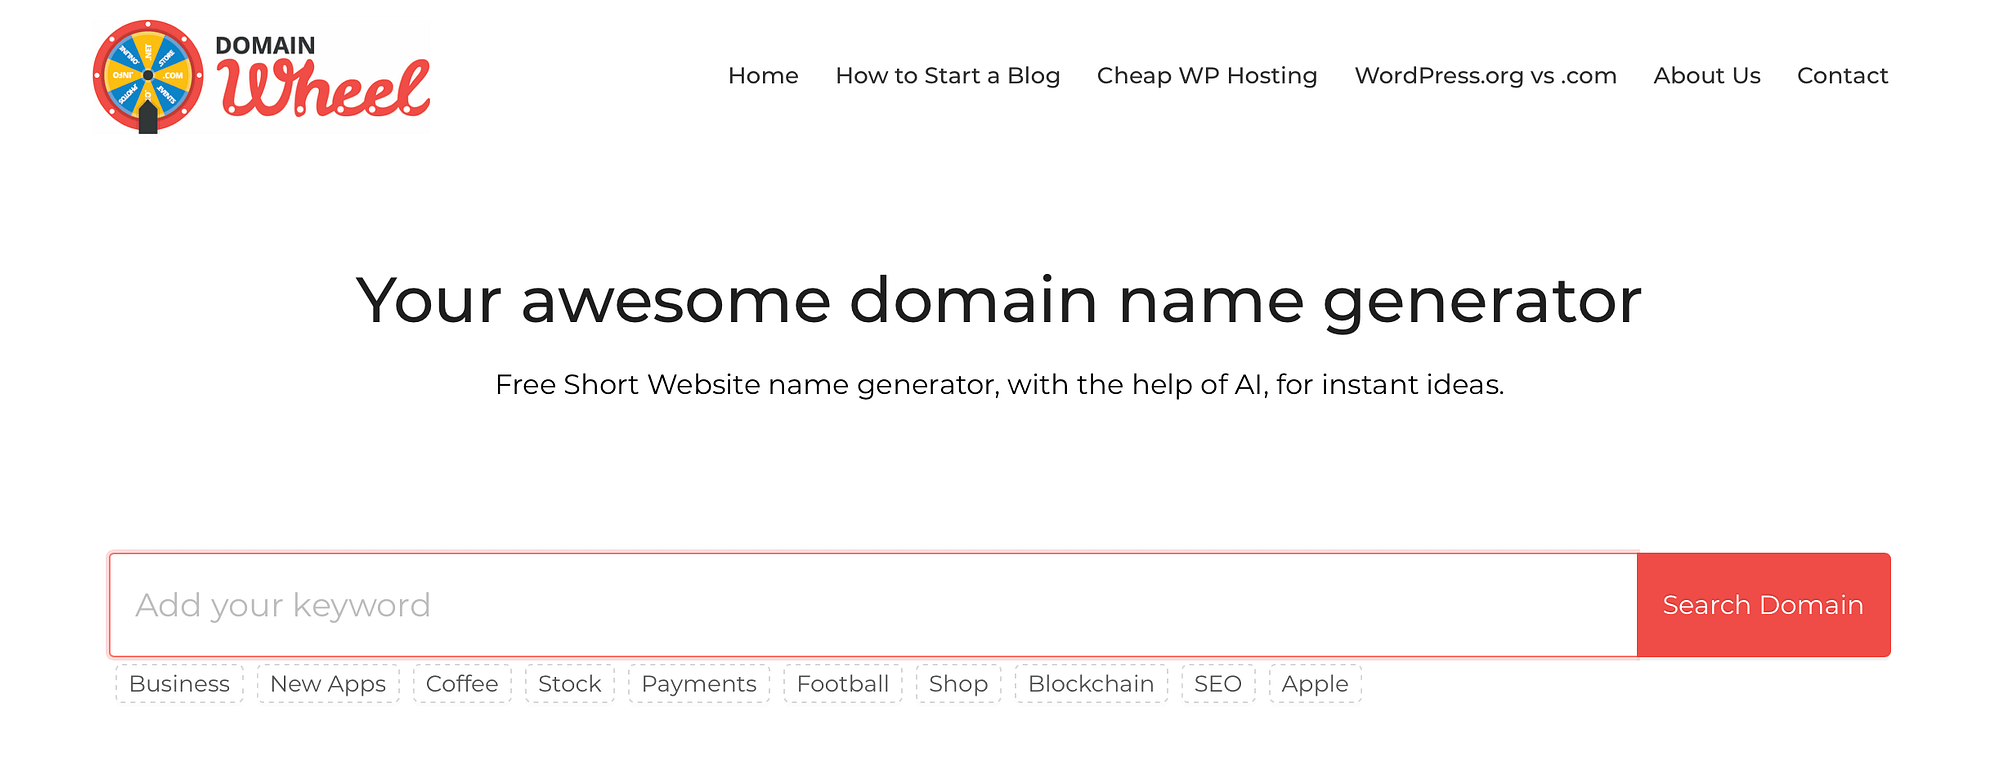 De Domain Wheel-website.